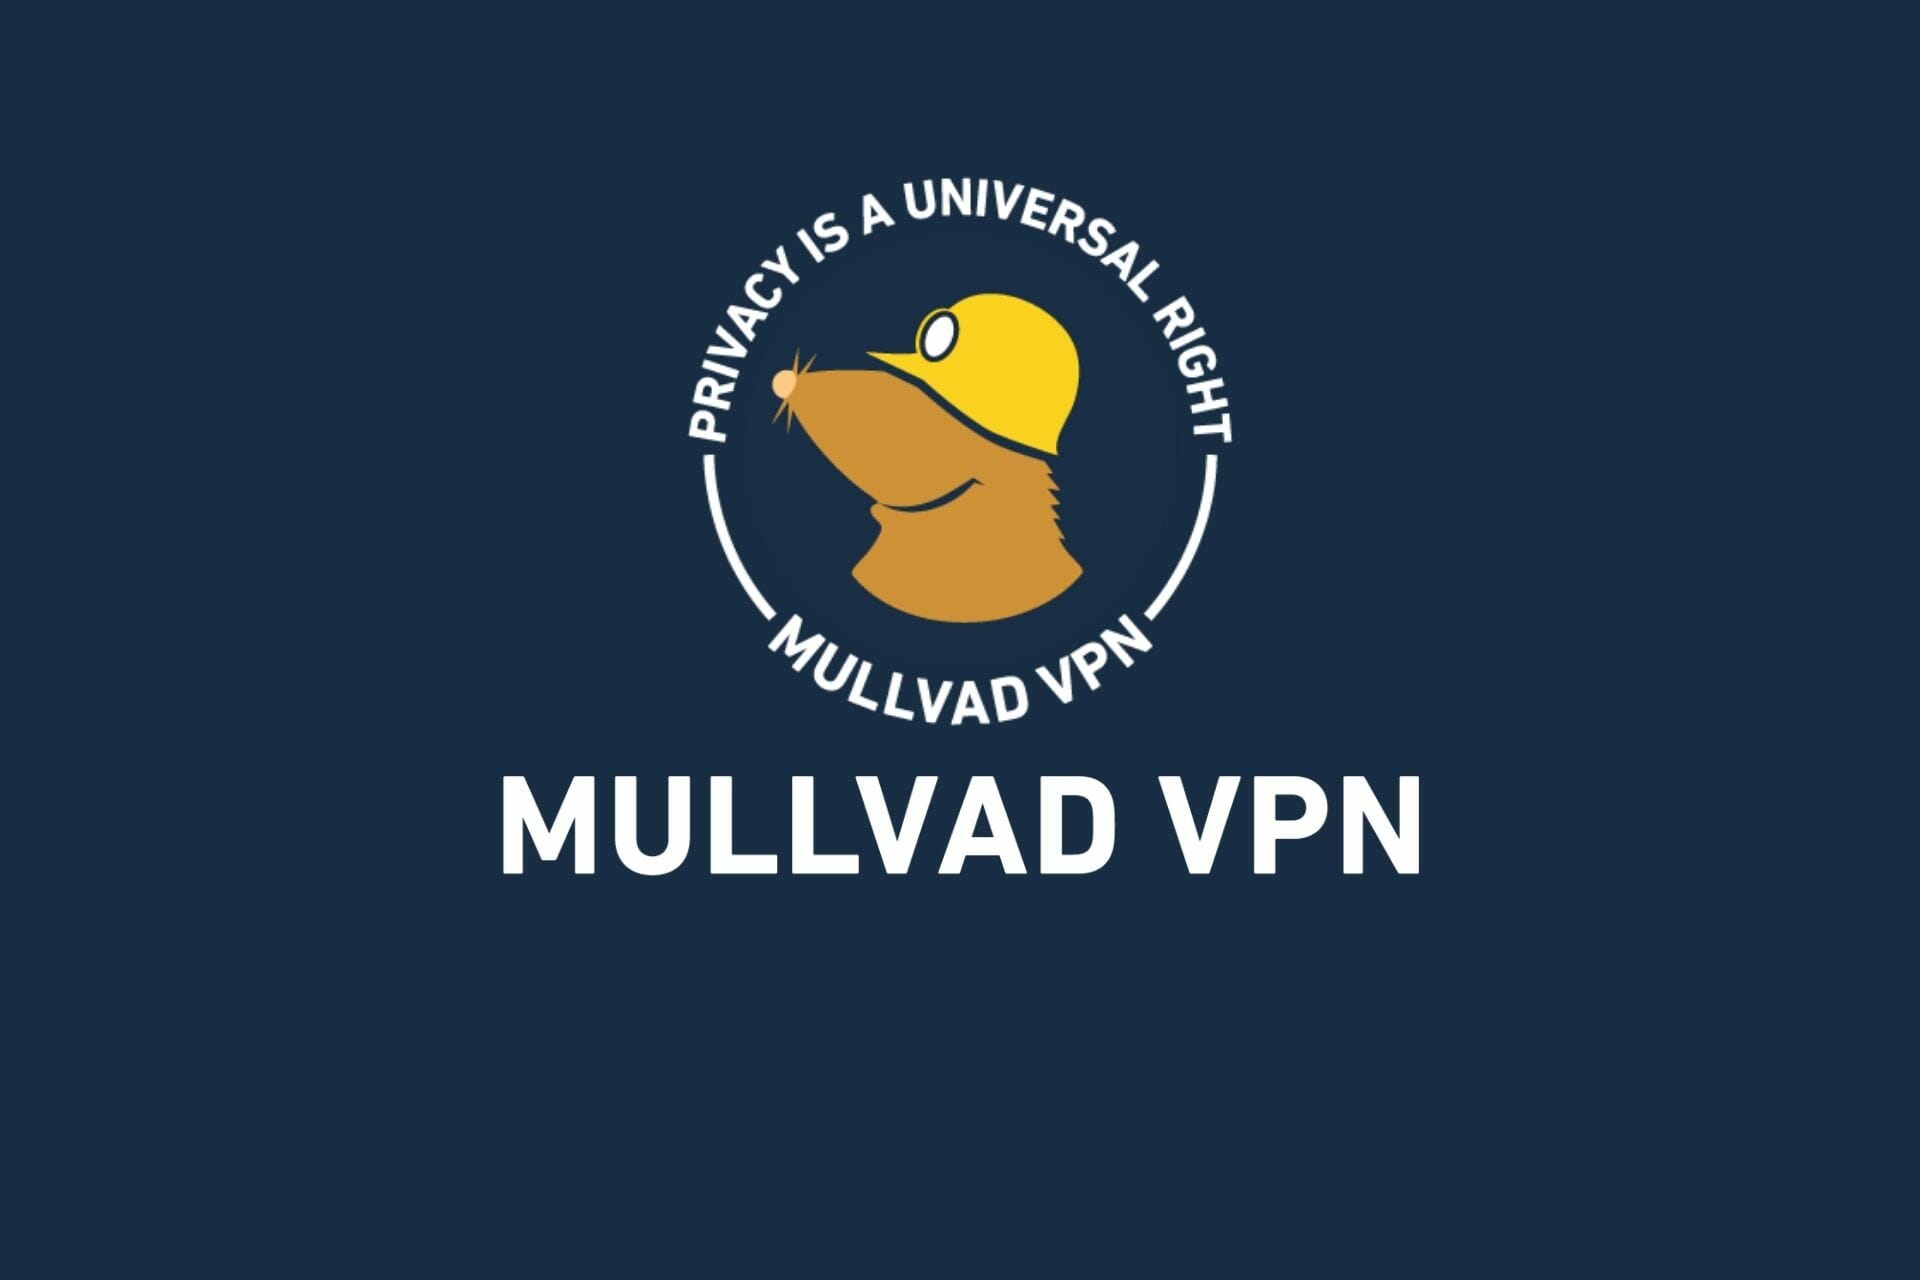 Mullvad VPN free trial